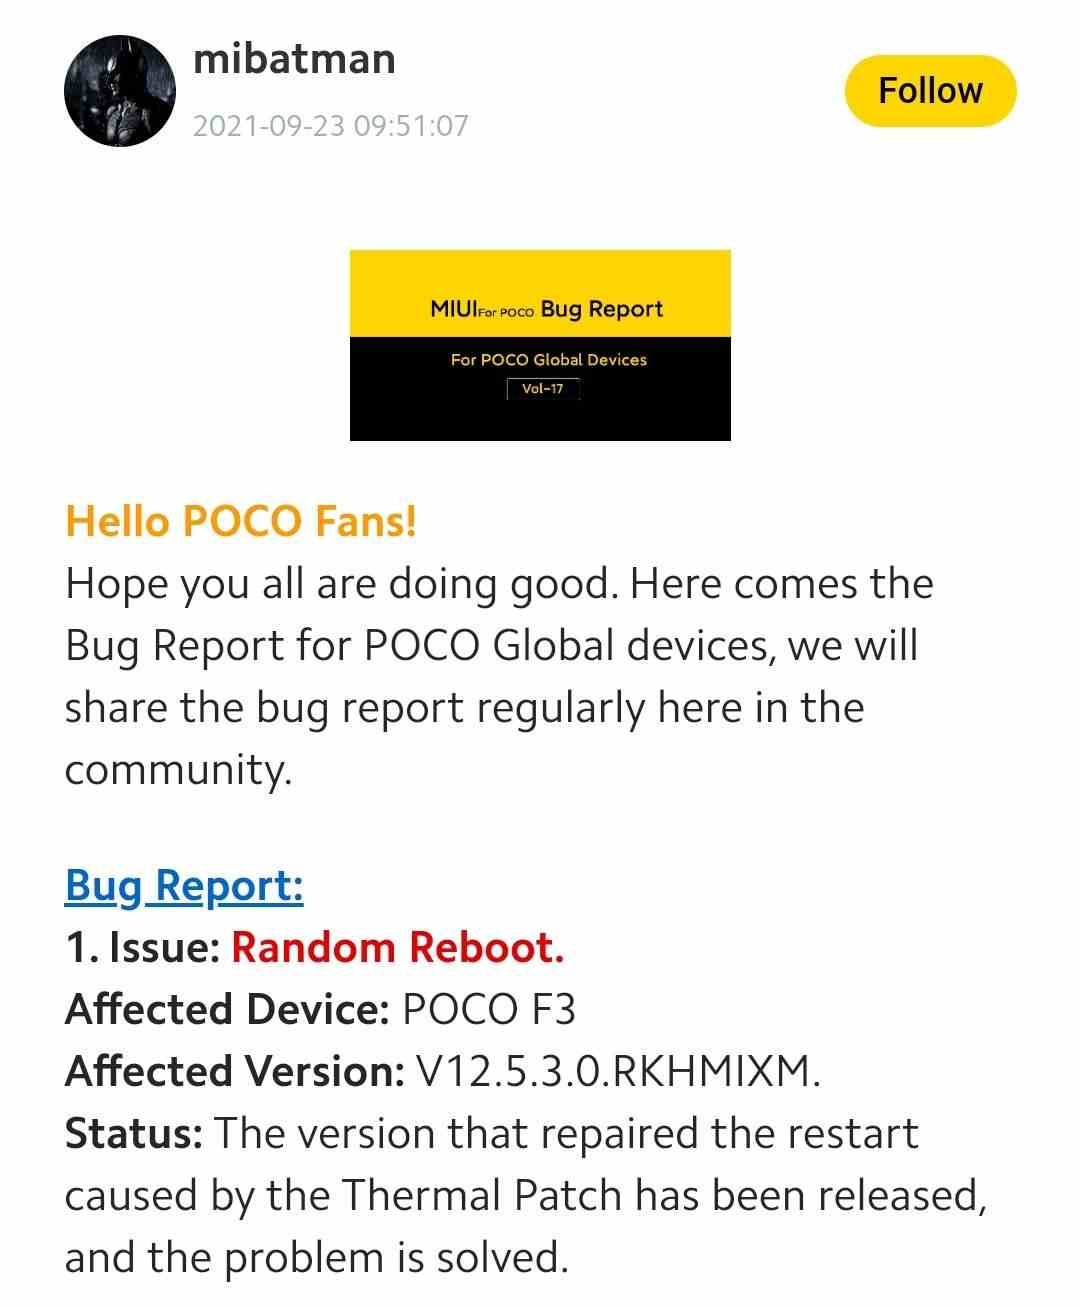 Miui bug report on POCO F3 random reboots